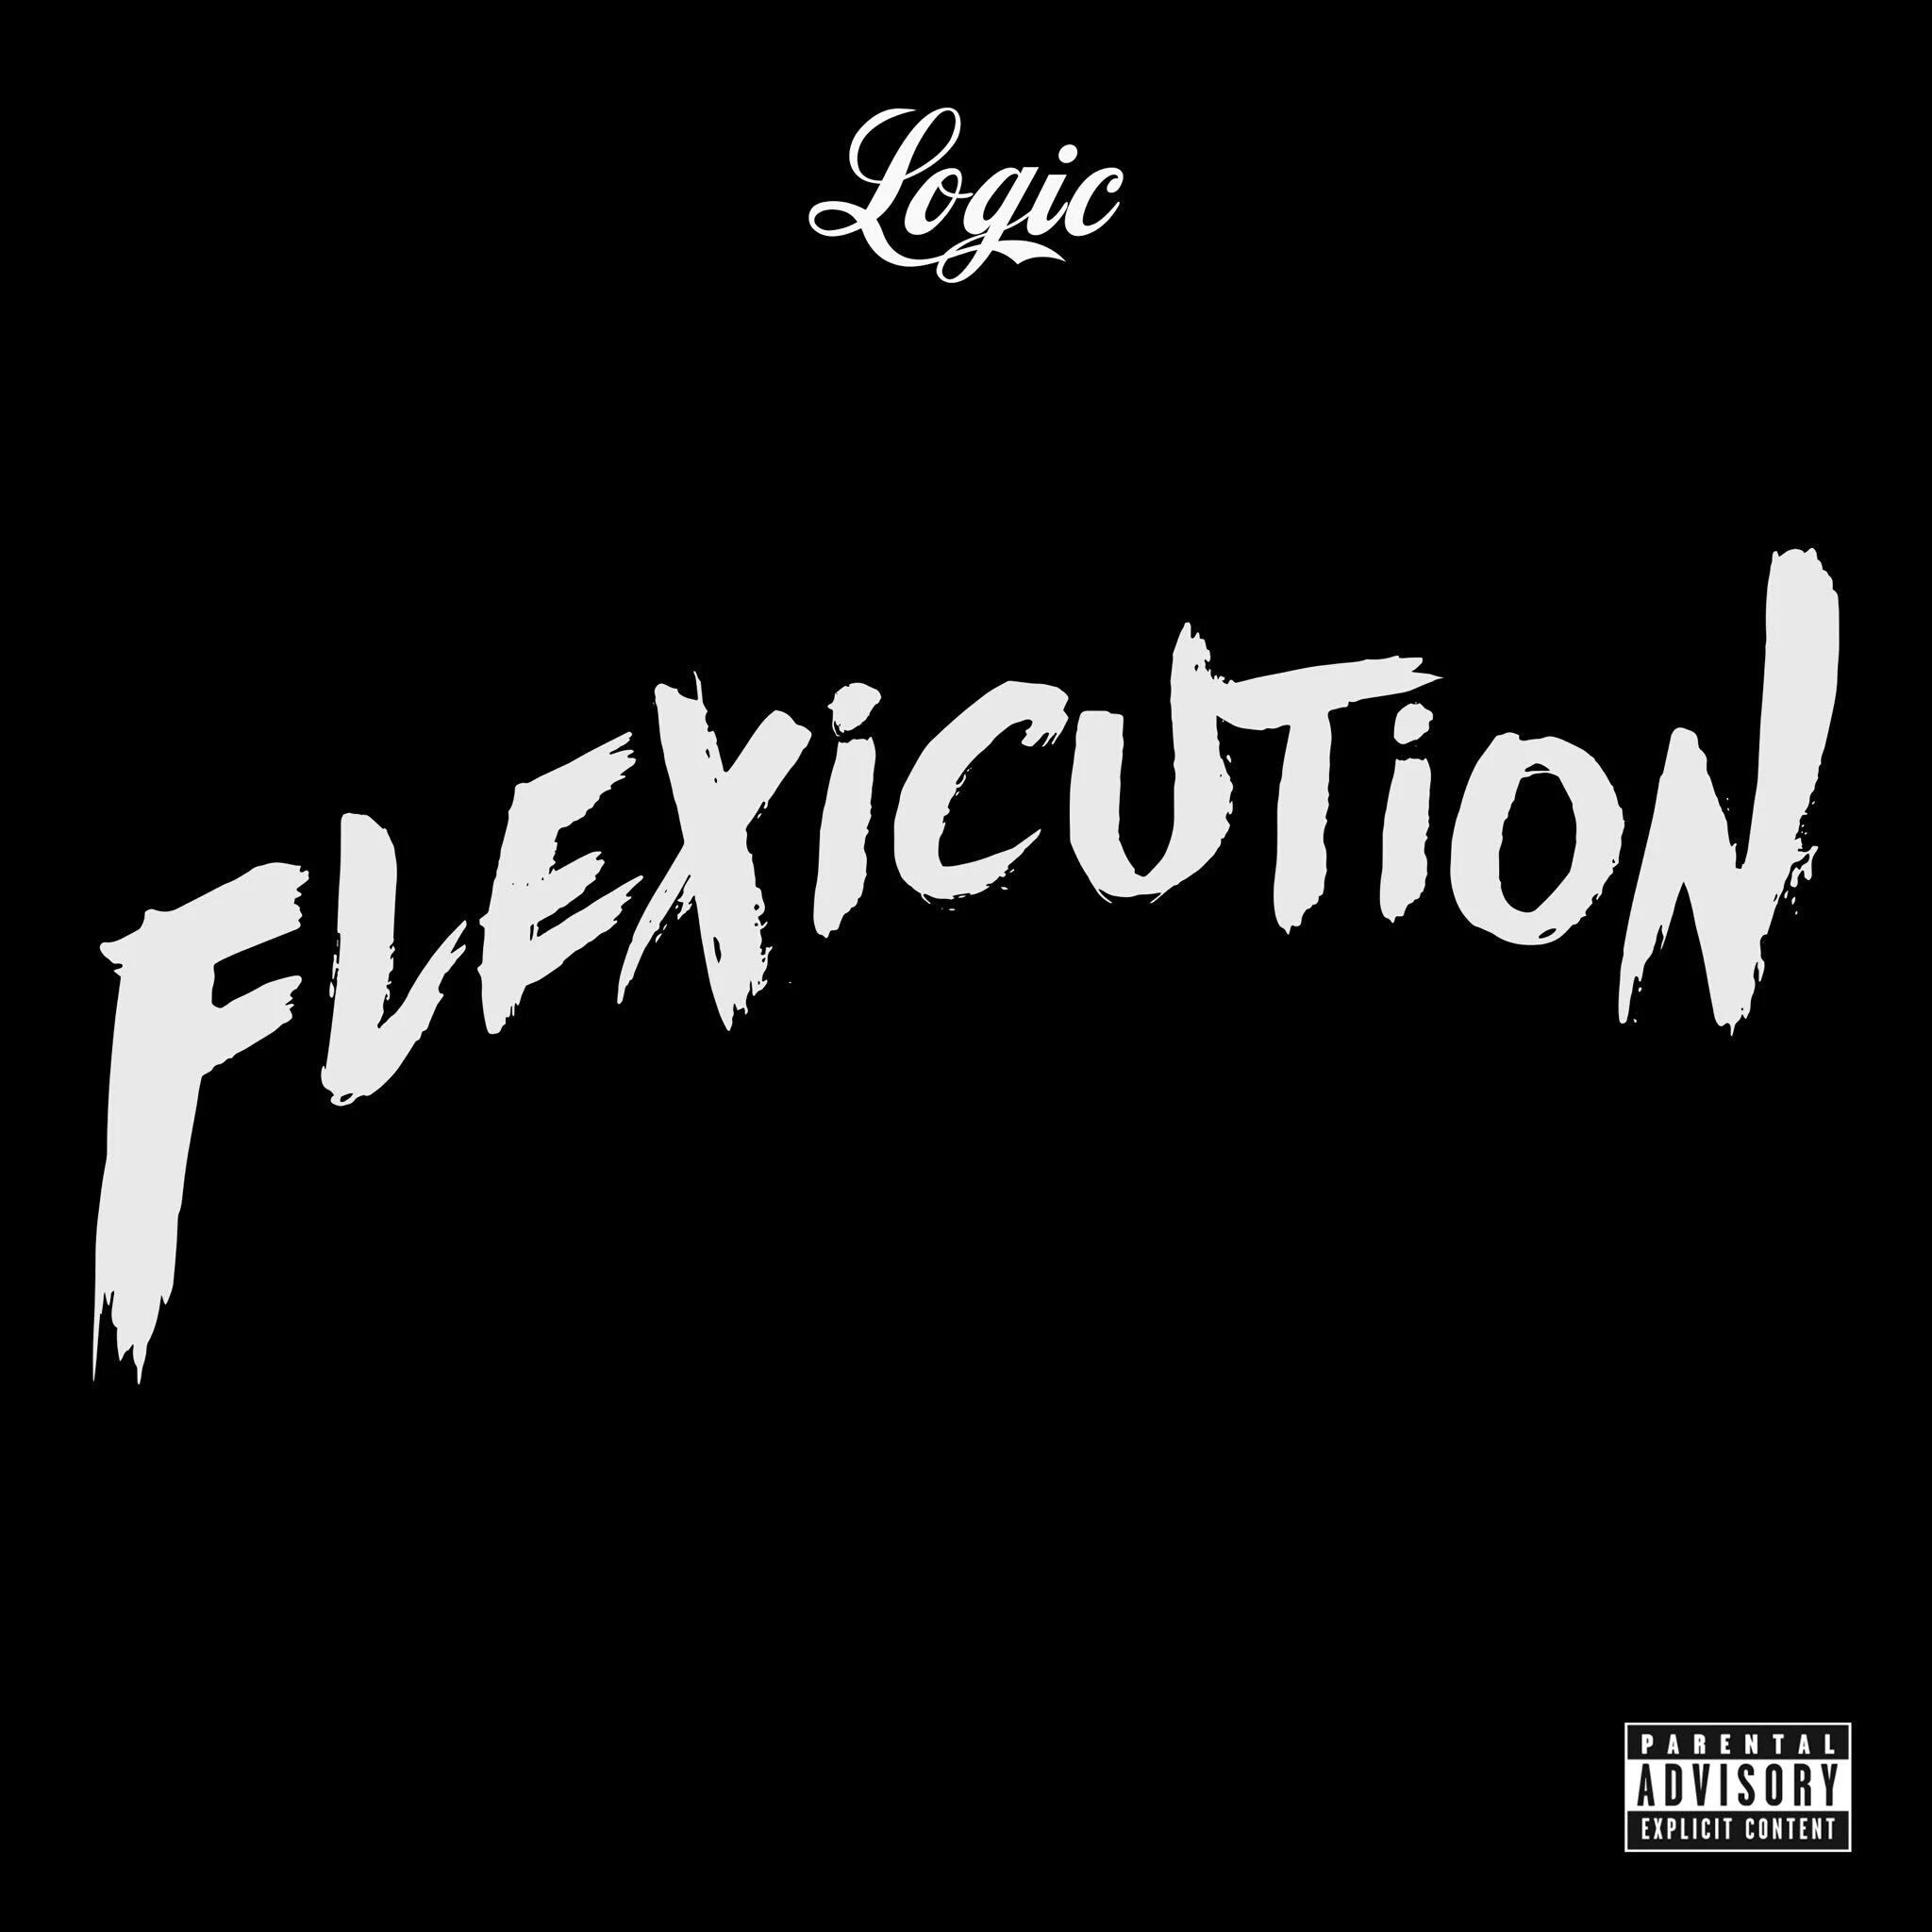 Flexicution (Logic) Font